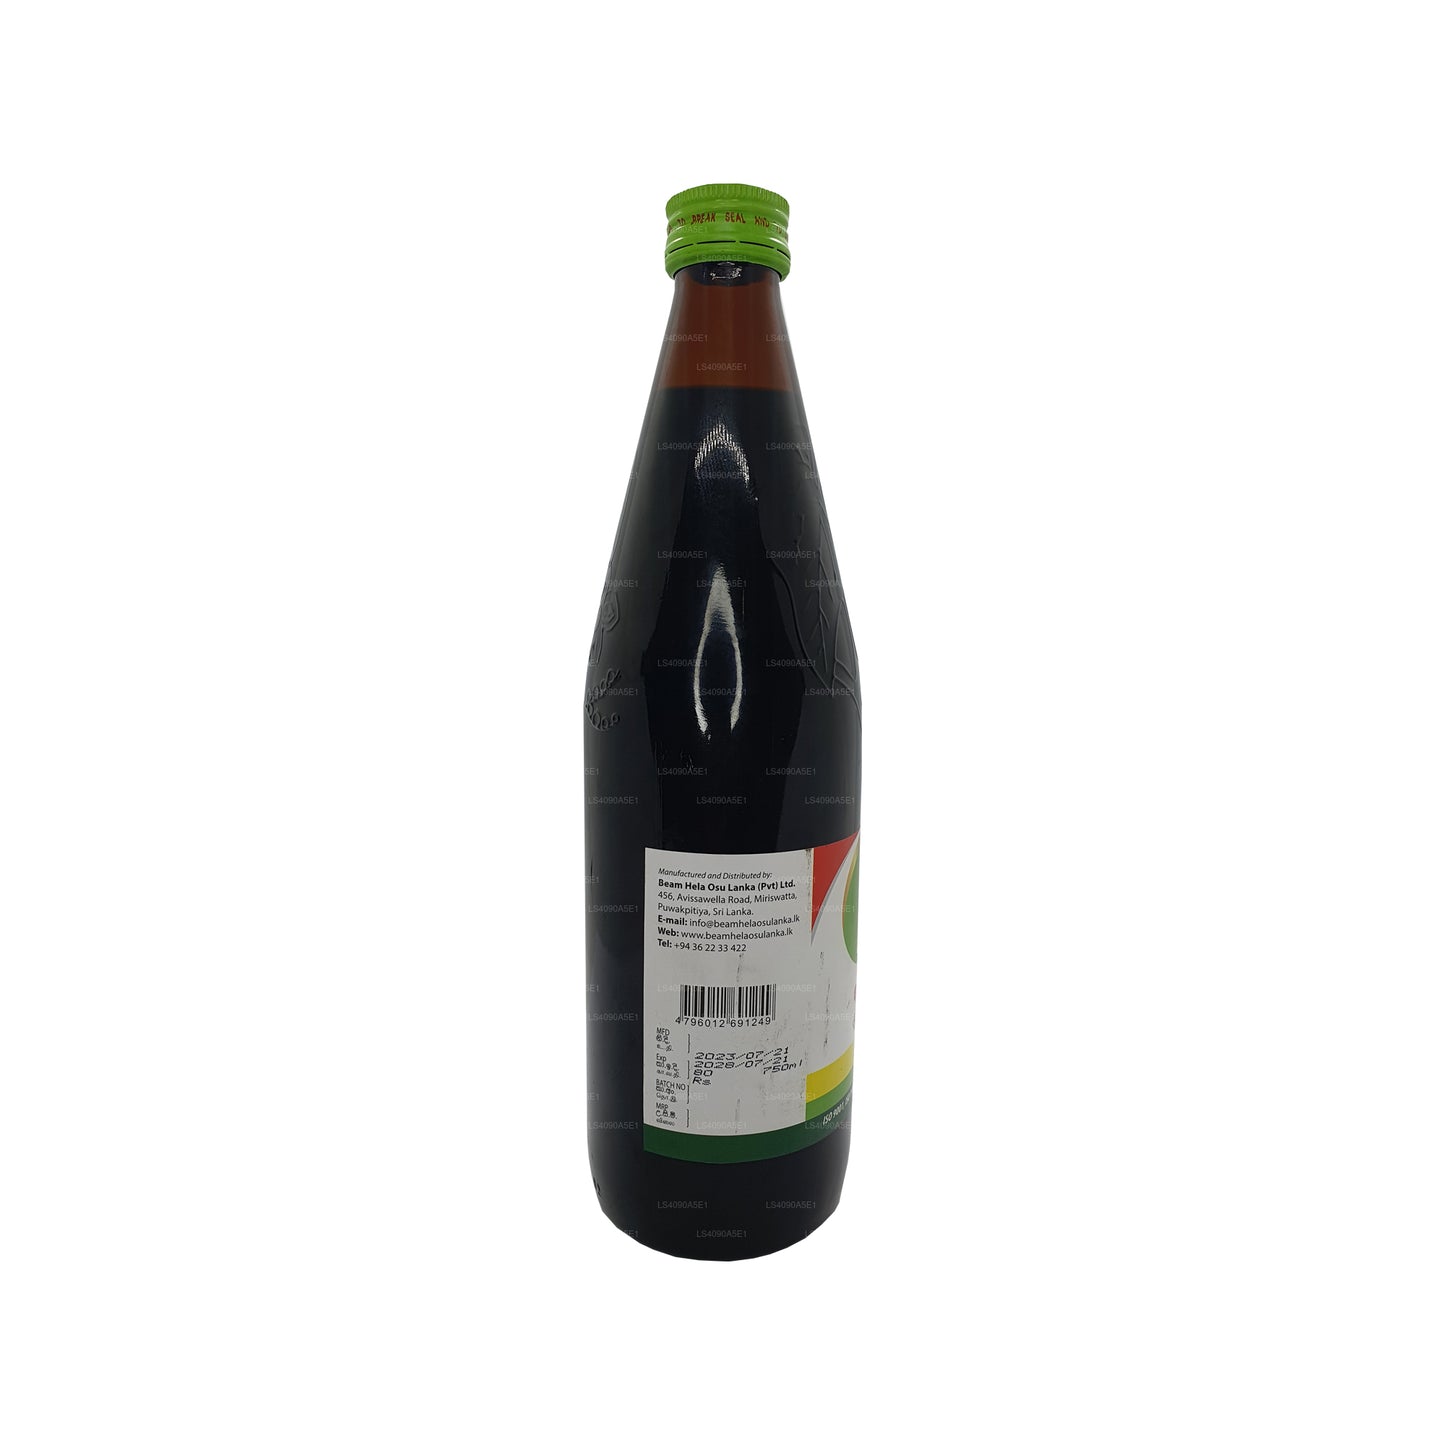 Beam Shoolahara Öl (30 ml)